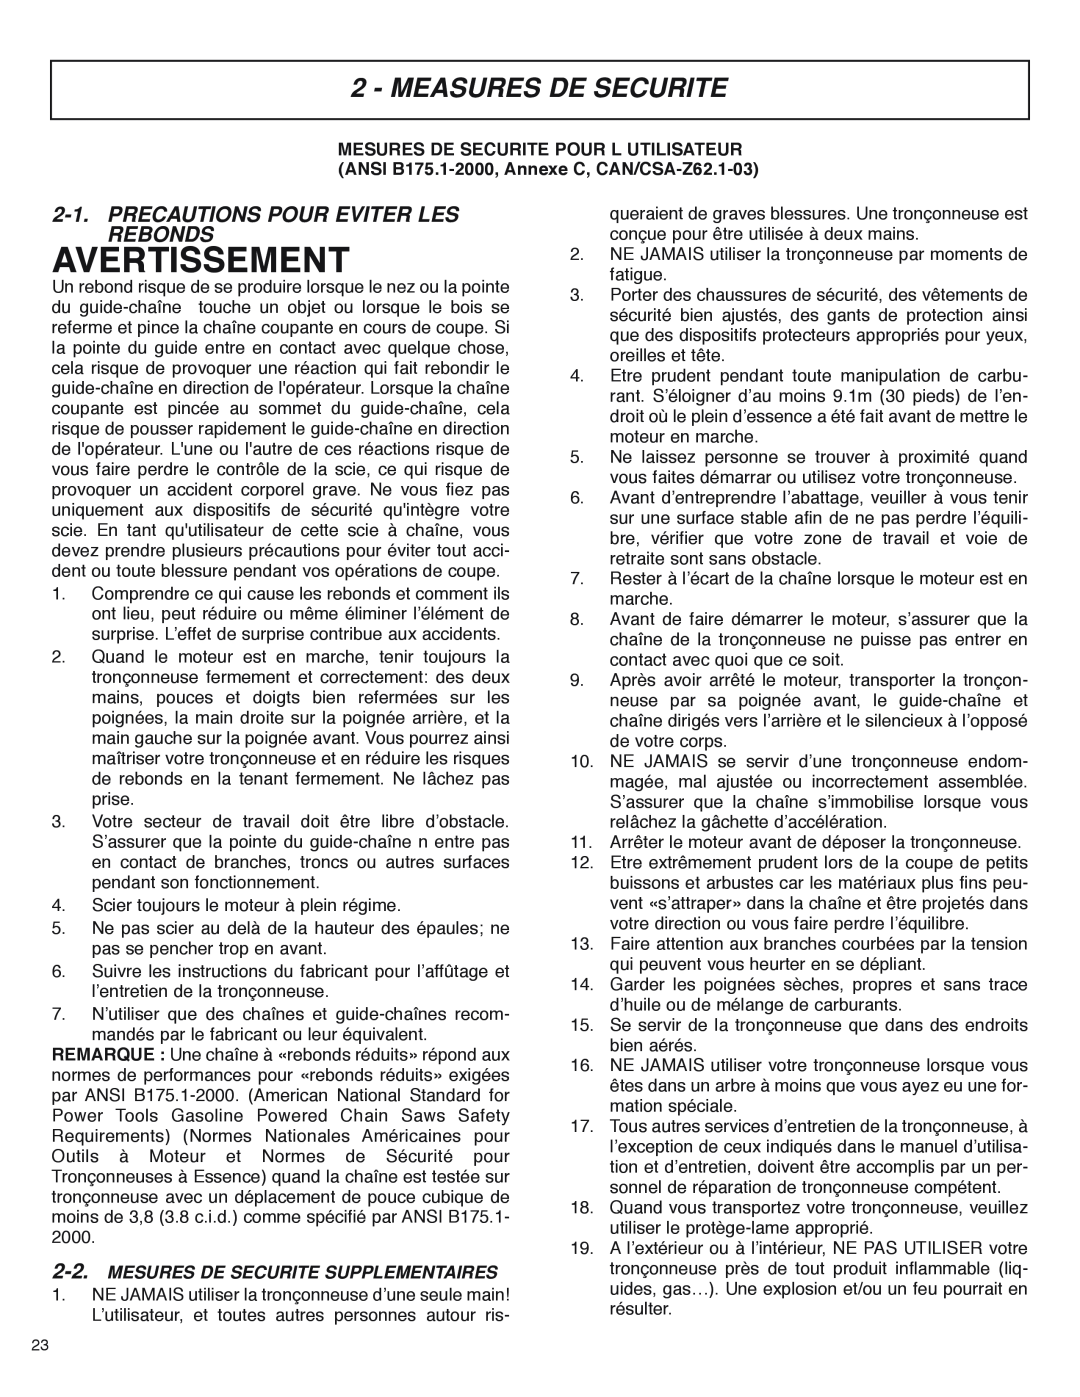 McCulloch MS4016PAVCC, MS4018PAVCC user manual Avertissement, Measures De Securite, Precautions Pour Eviter Les Rebonds 